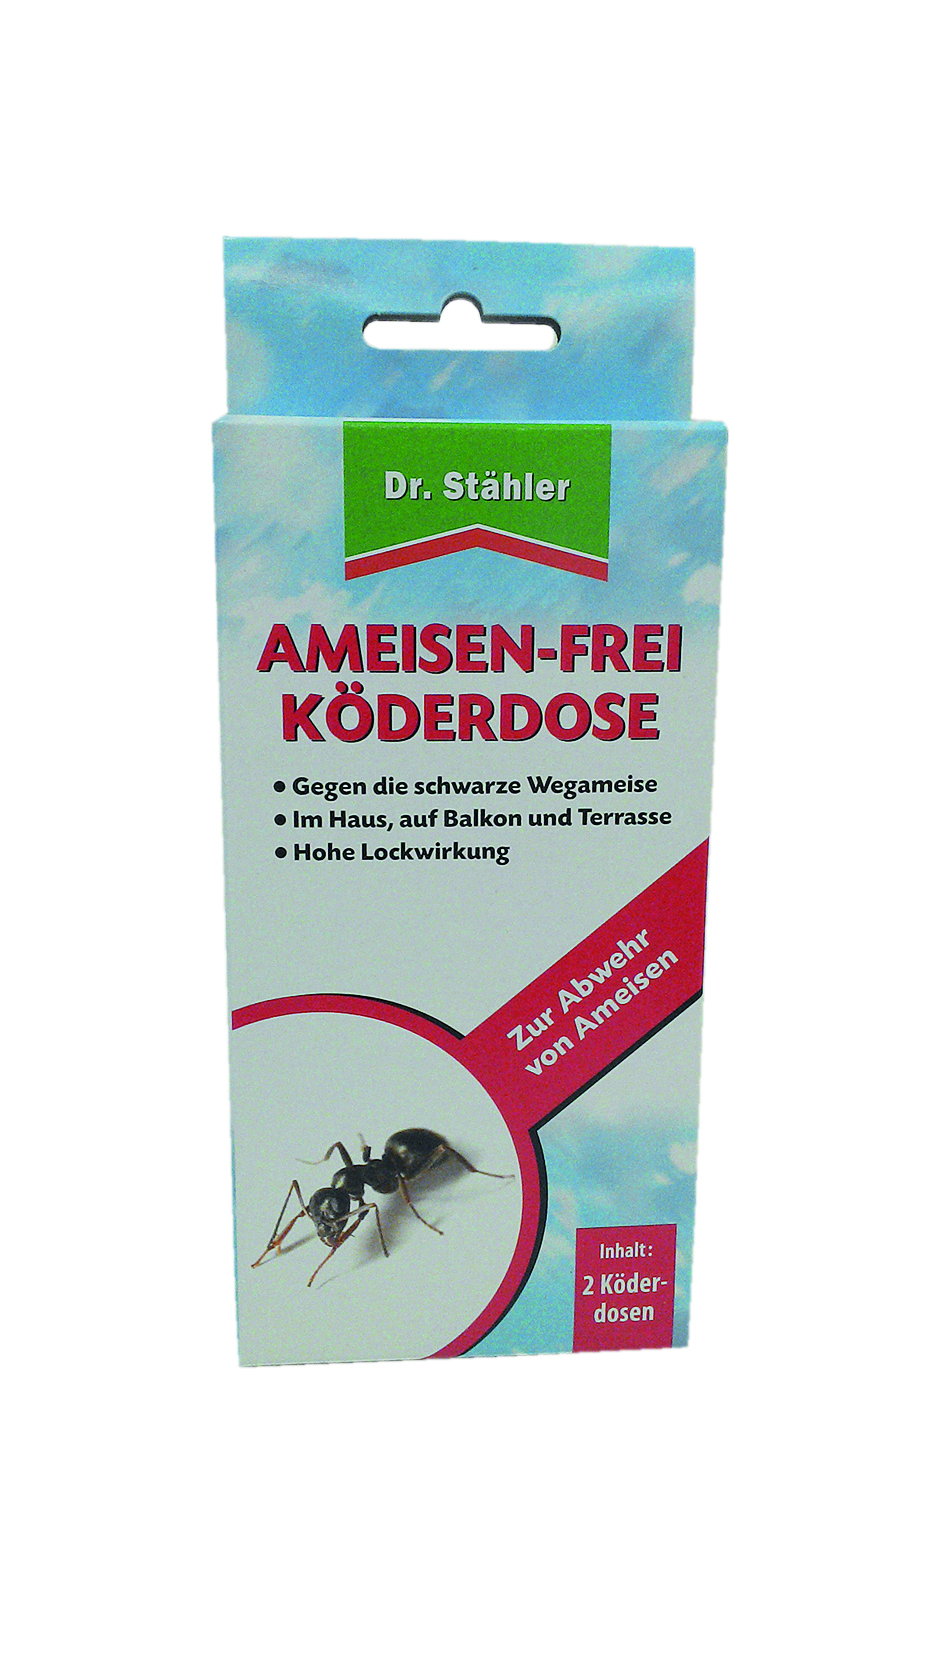 Ameisen-Ex Köderdose Super, Biozid, Inhalt 2 Köderdosen